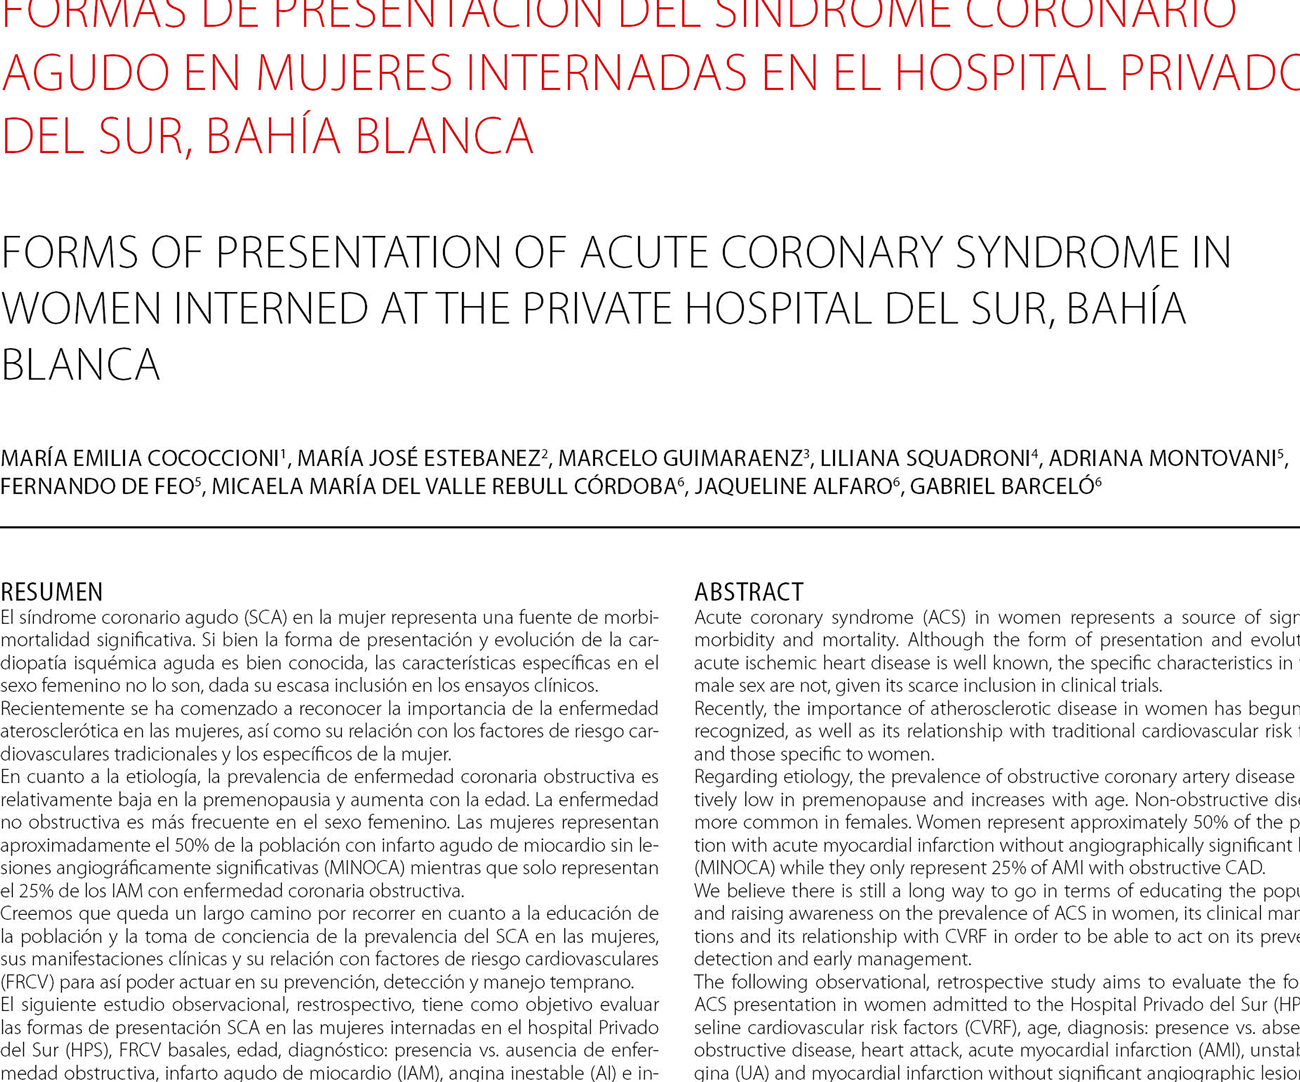 Formas de presentación del síndrome coronario agudo en mujeres internadas en el Hospital Privado del Sur, Bahía Blanca